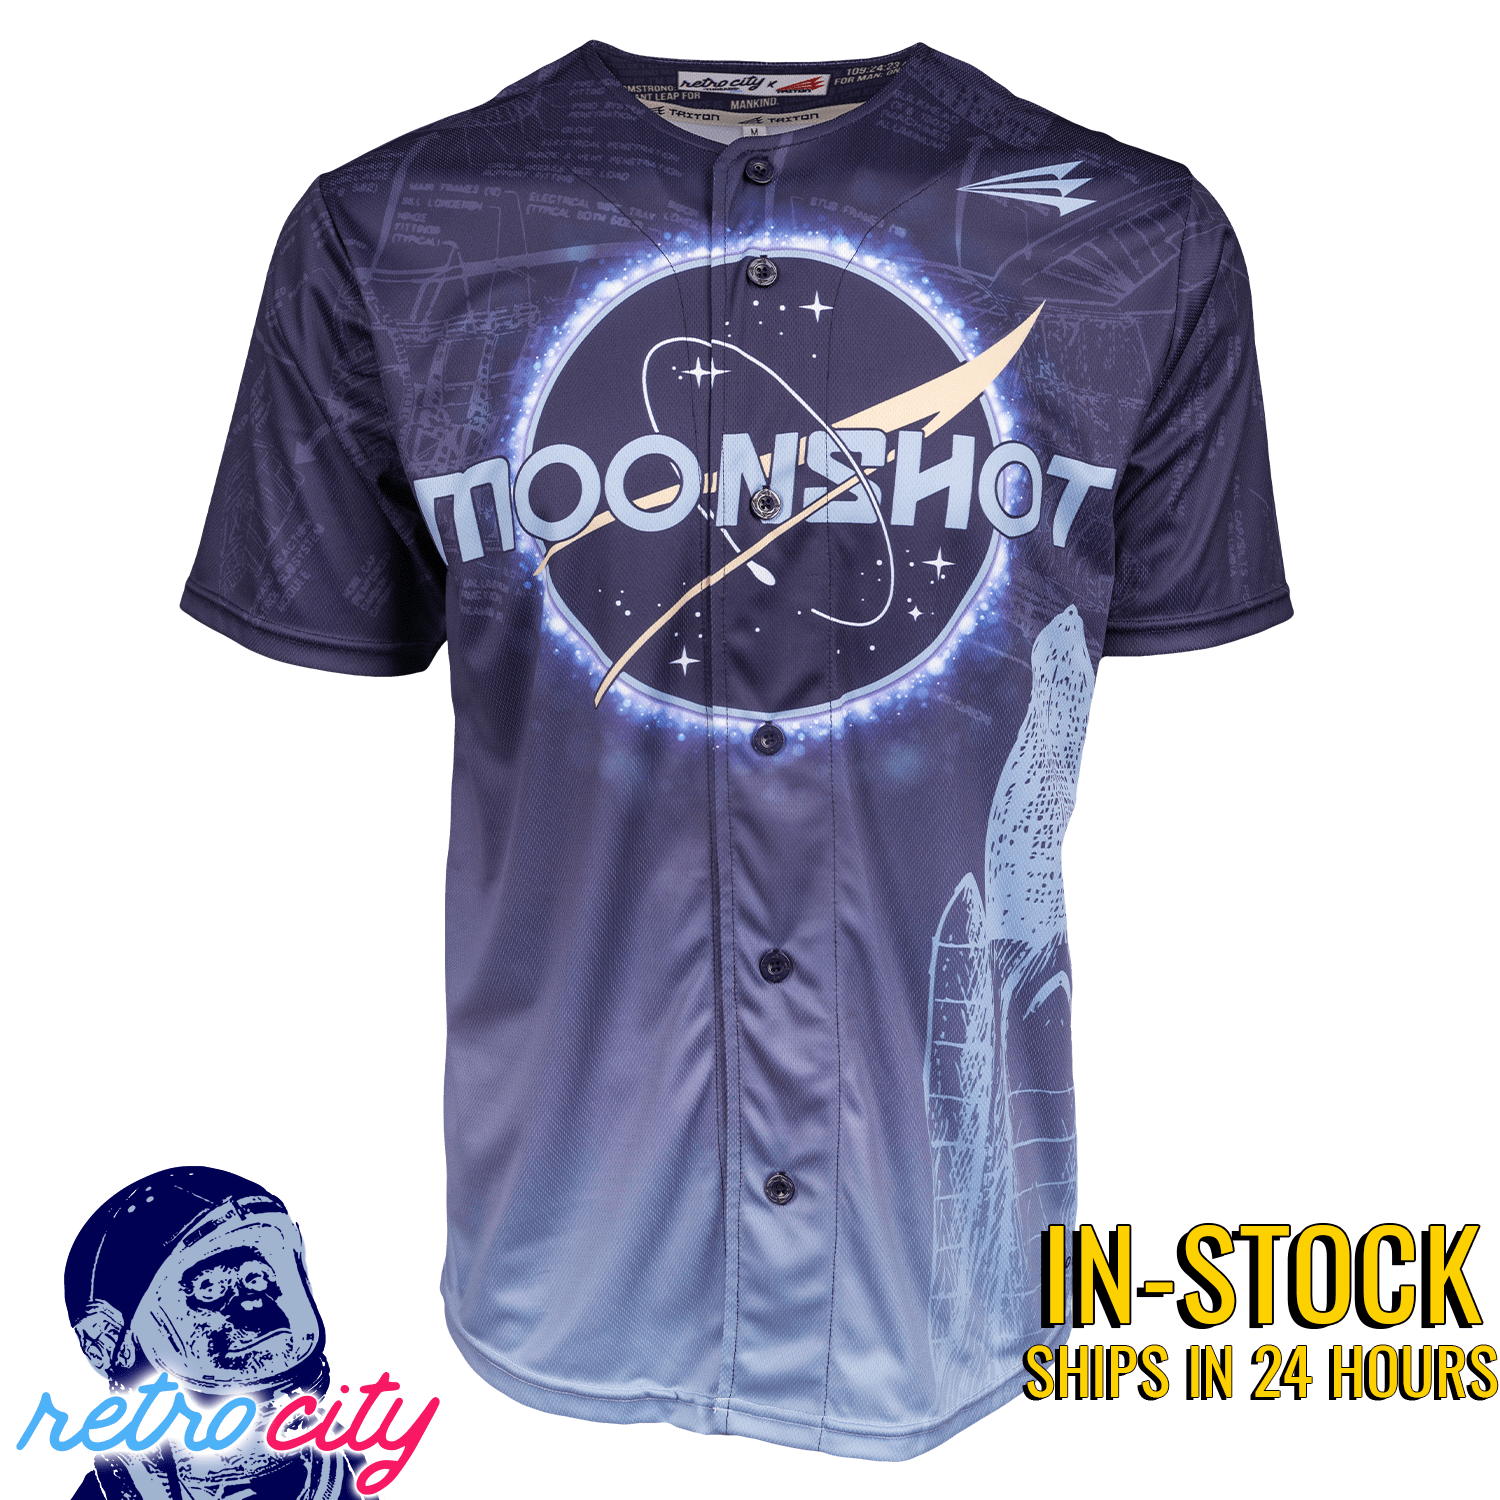 Moonshot NASA Seamhead Collection Triton Baseball Jersey